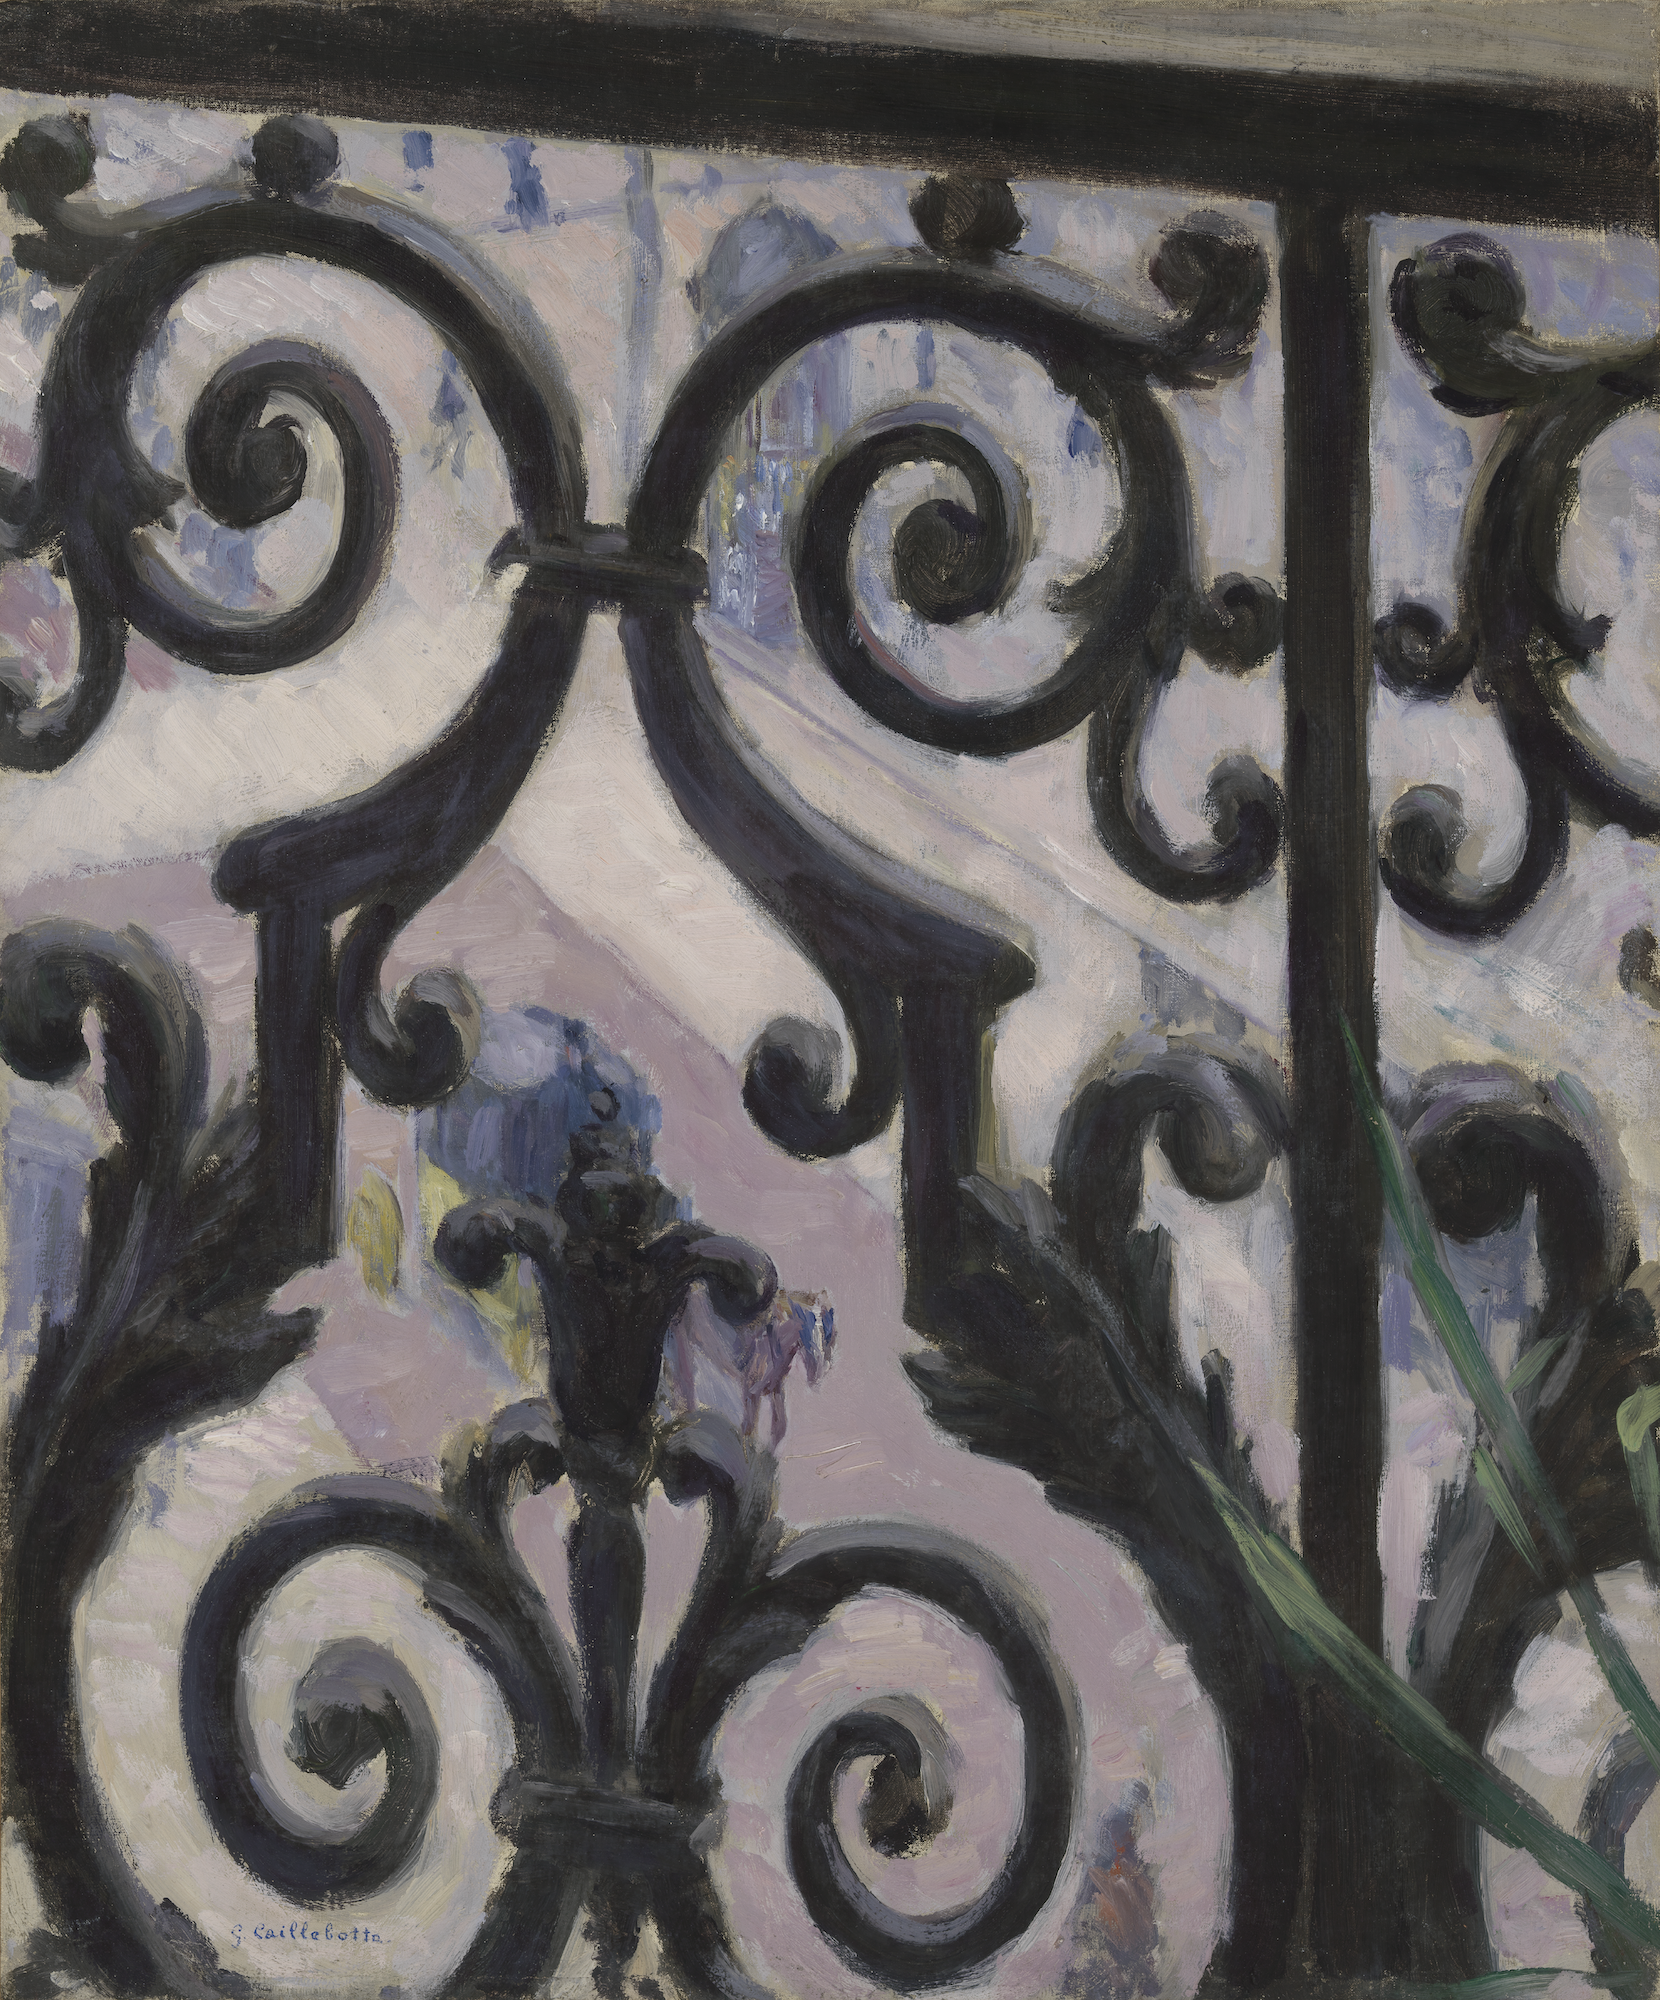 透过阳台看到的景色 by 古斯塔夫 卡勒波特 - 1880 - 65.6 x 54.9 厘米 梵高博物馆